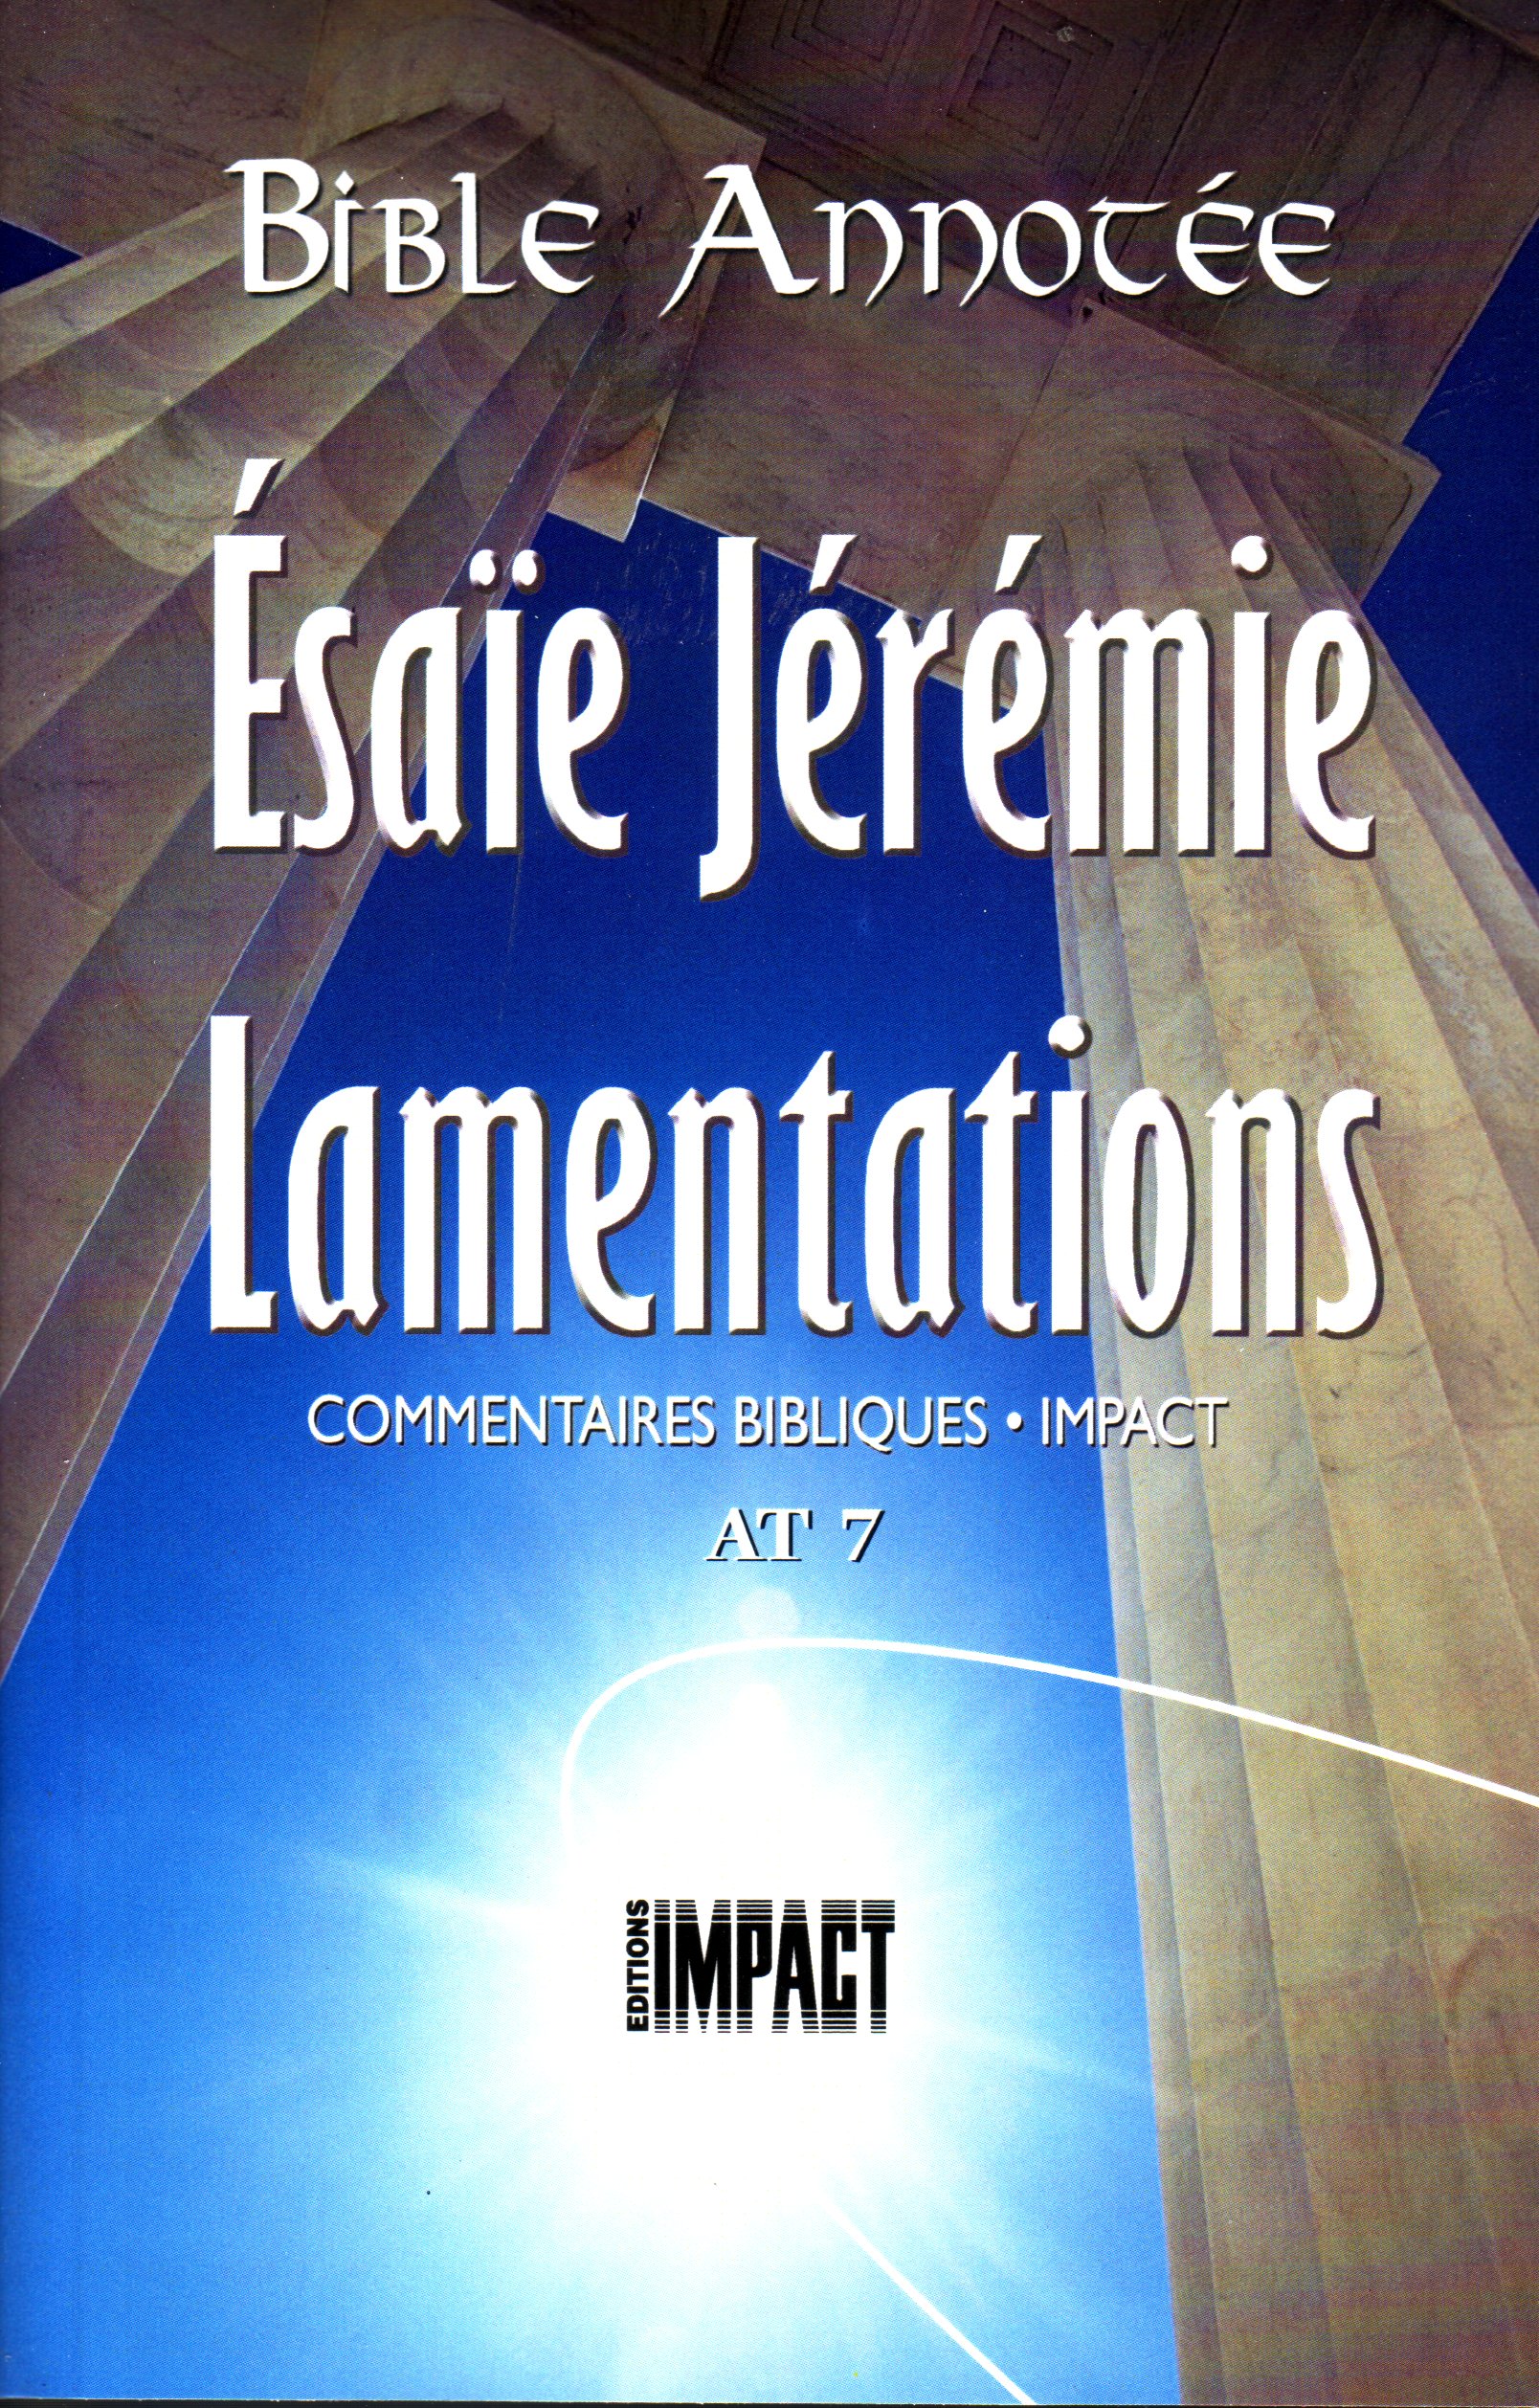 Bible Annotée - Esaïe Jérémie Lamentations (La) - Commentaires bibliques Impact AT 7